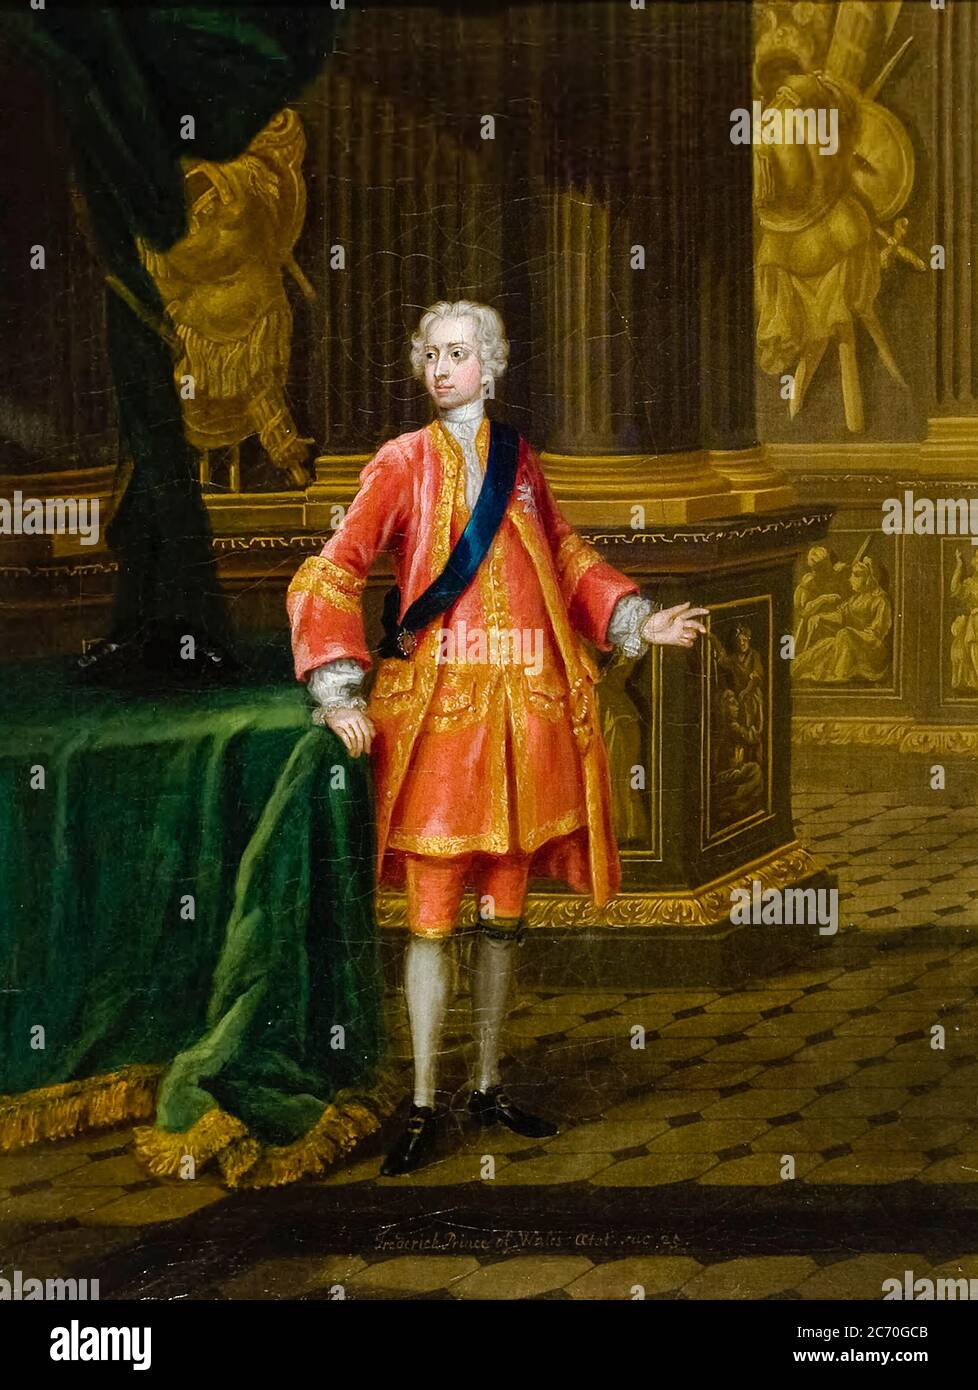 Federico, Principe di Galles (1707-1751), erede apparente al trono britannico dal 1727, ritratto di Charles Philips, 1731 Foto Stock